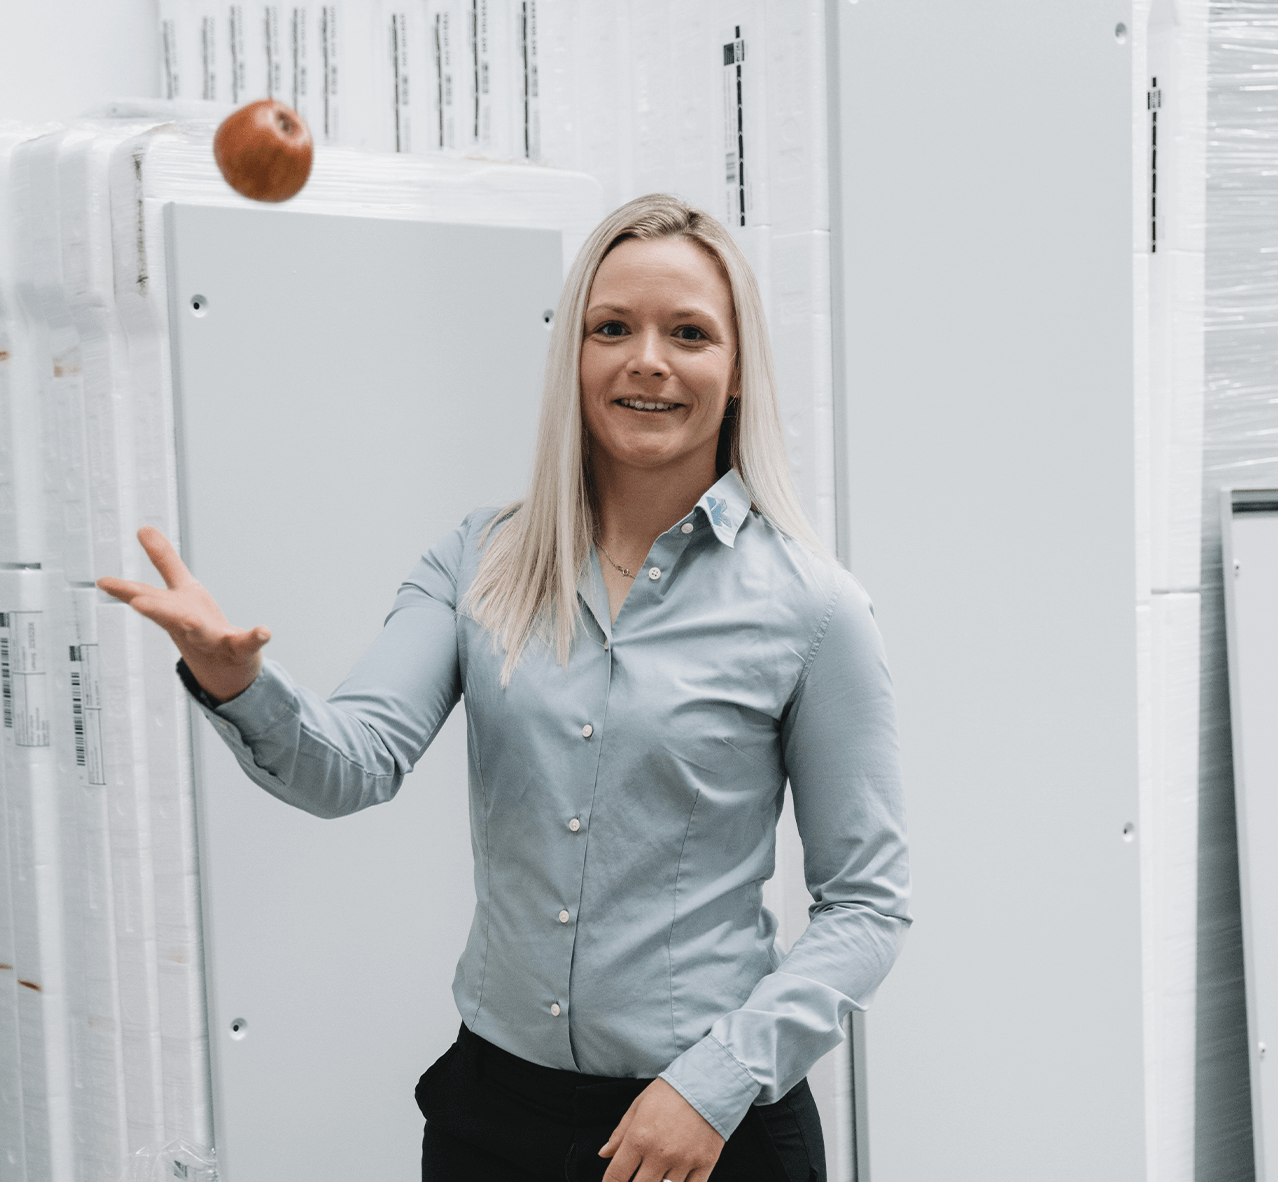 Ausbildung im Elektrohandwerk Mitarbeiterin wirft Apfel in die Luft